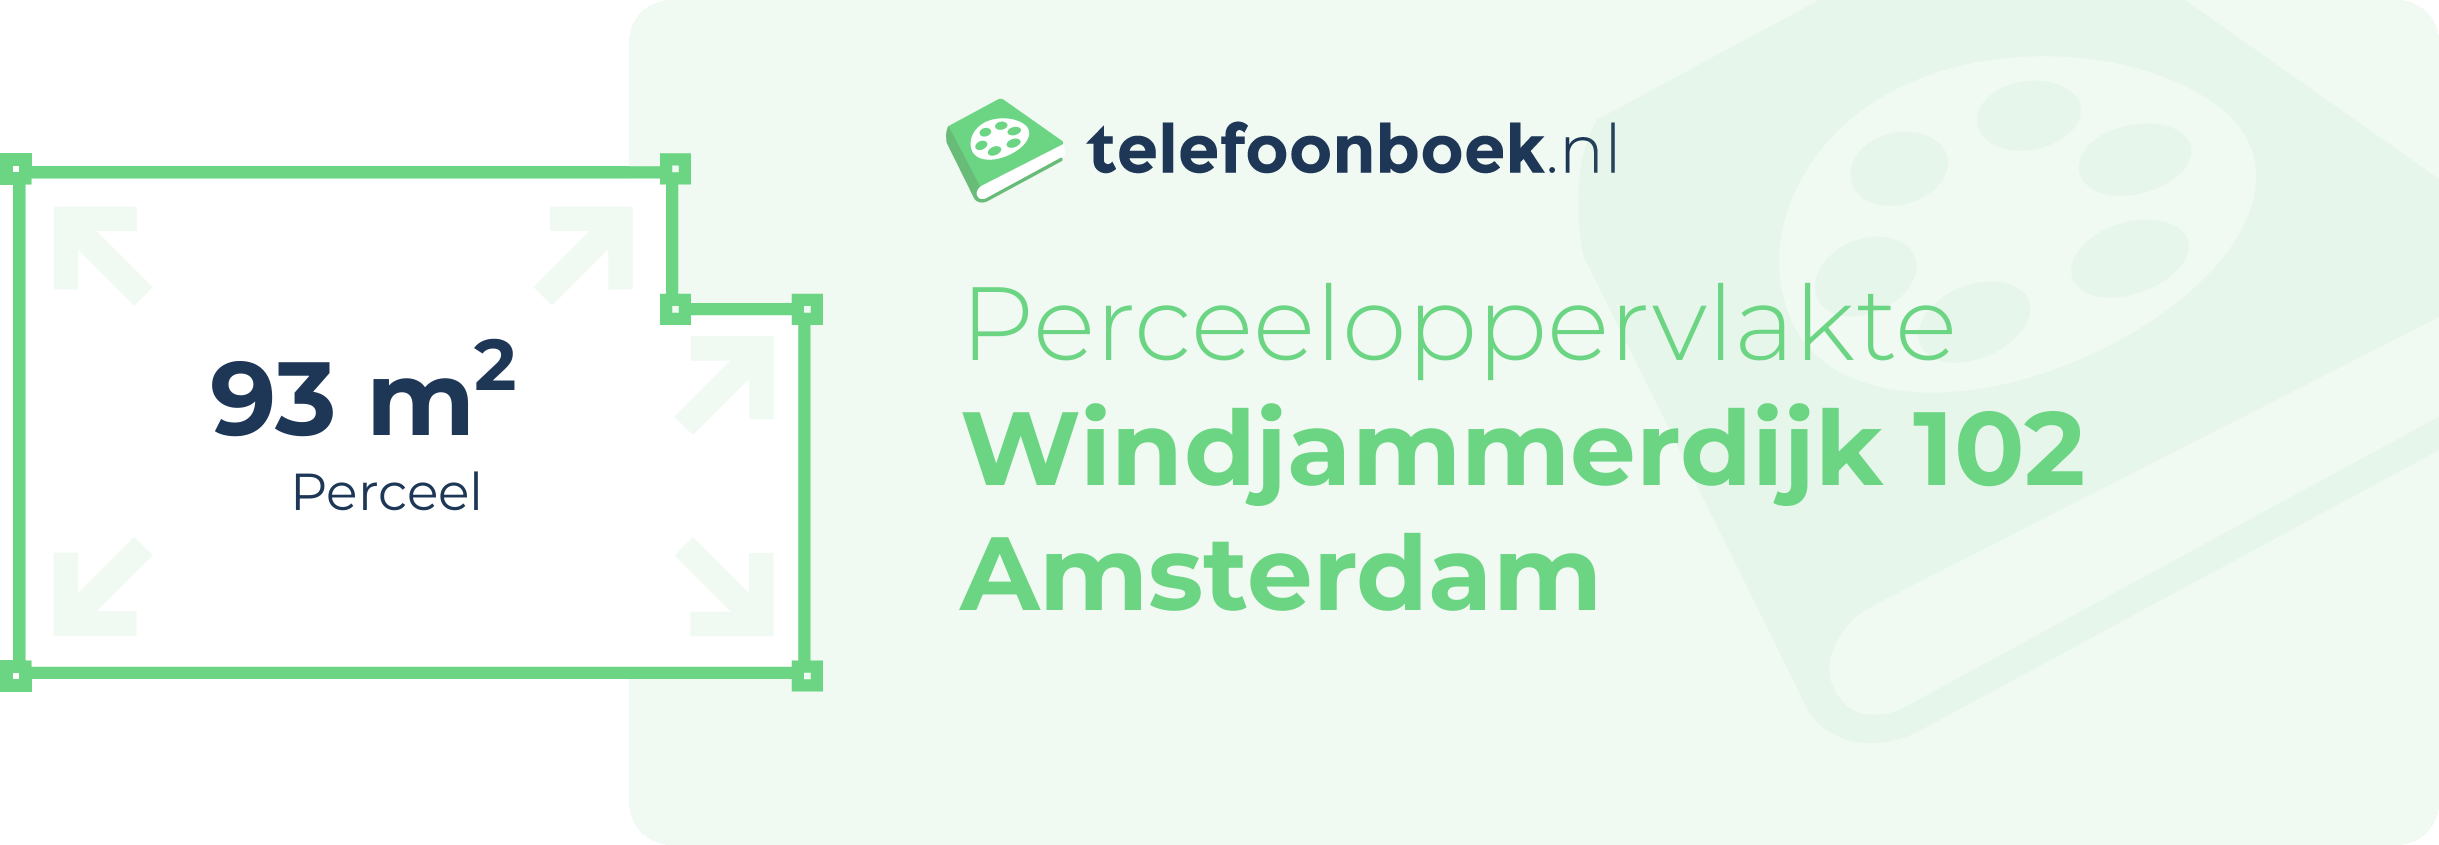 Perceeloppervlakte Windjammerdijk 102 Amsterdam